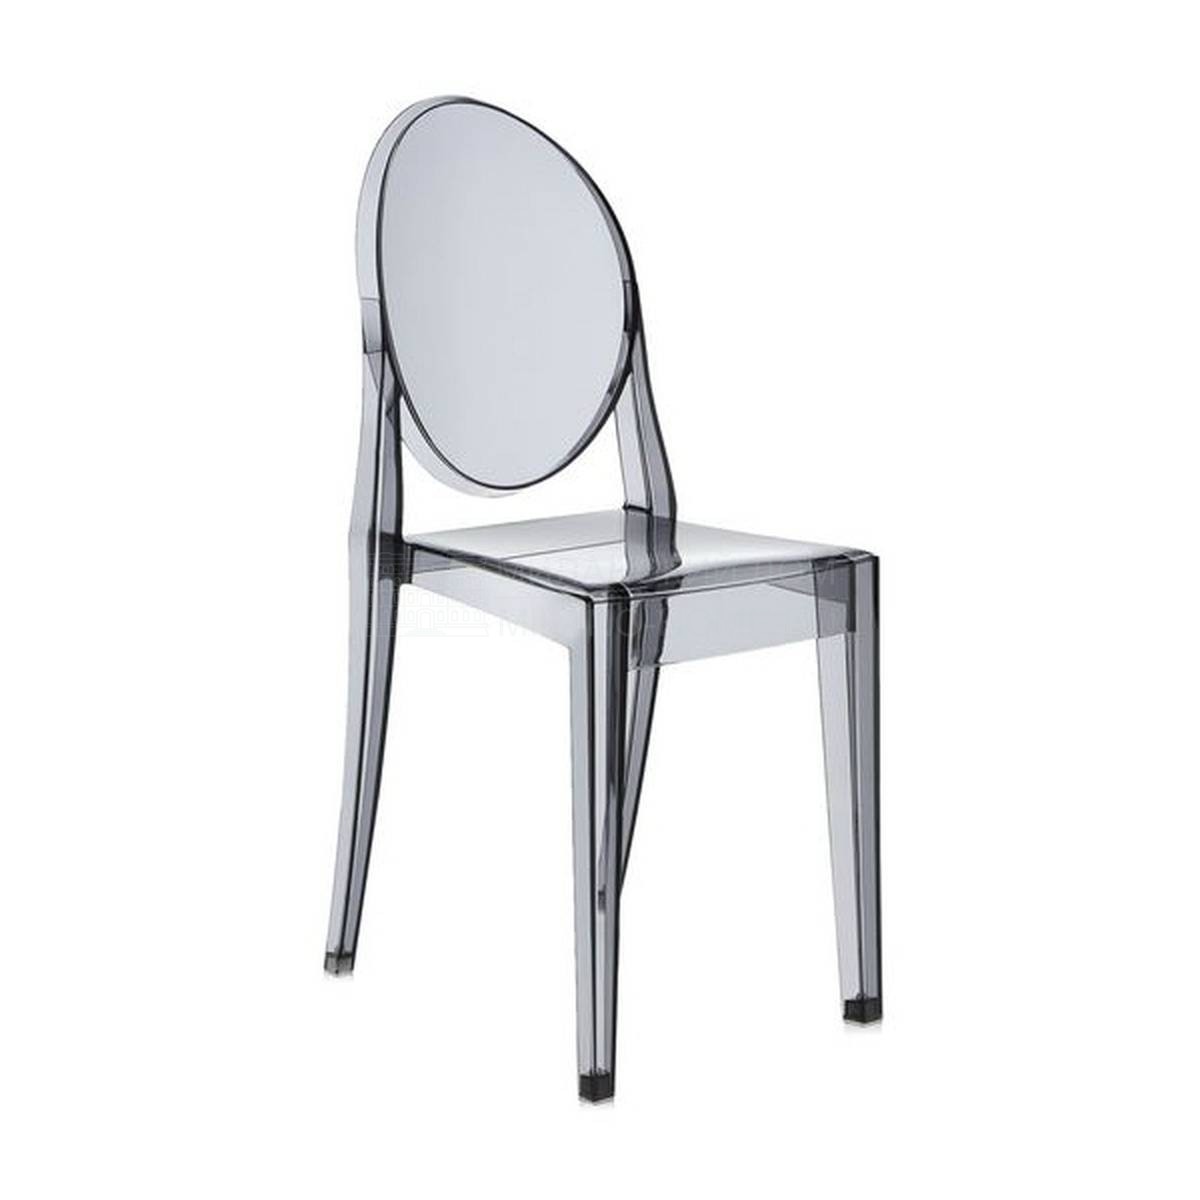 Металлический / Пластиковый стул Victoria Ghost из Италии фабрики KARTELL